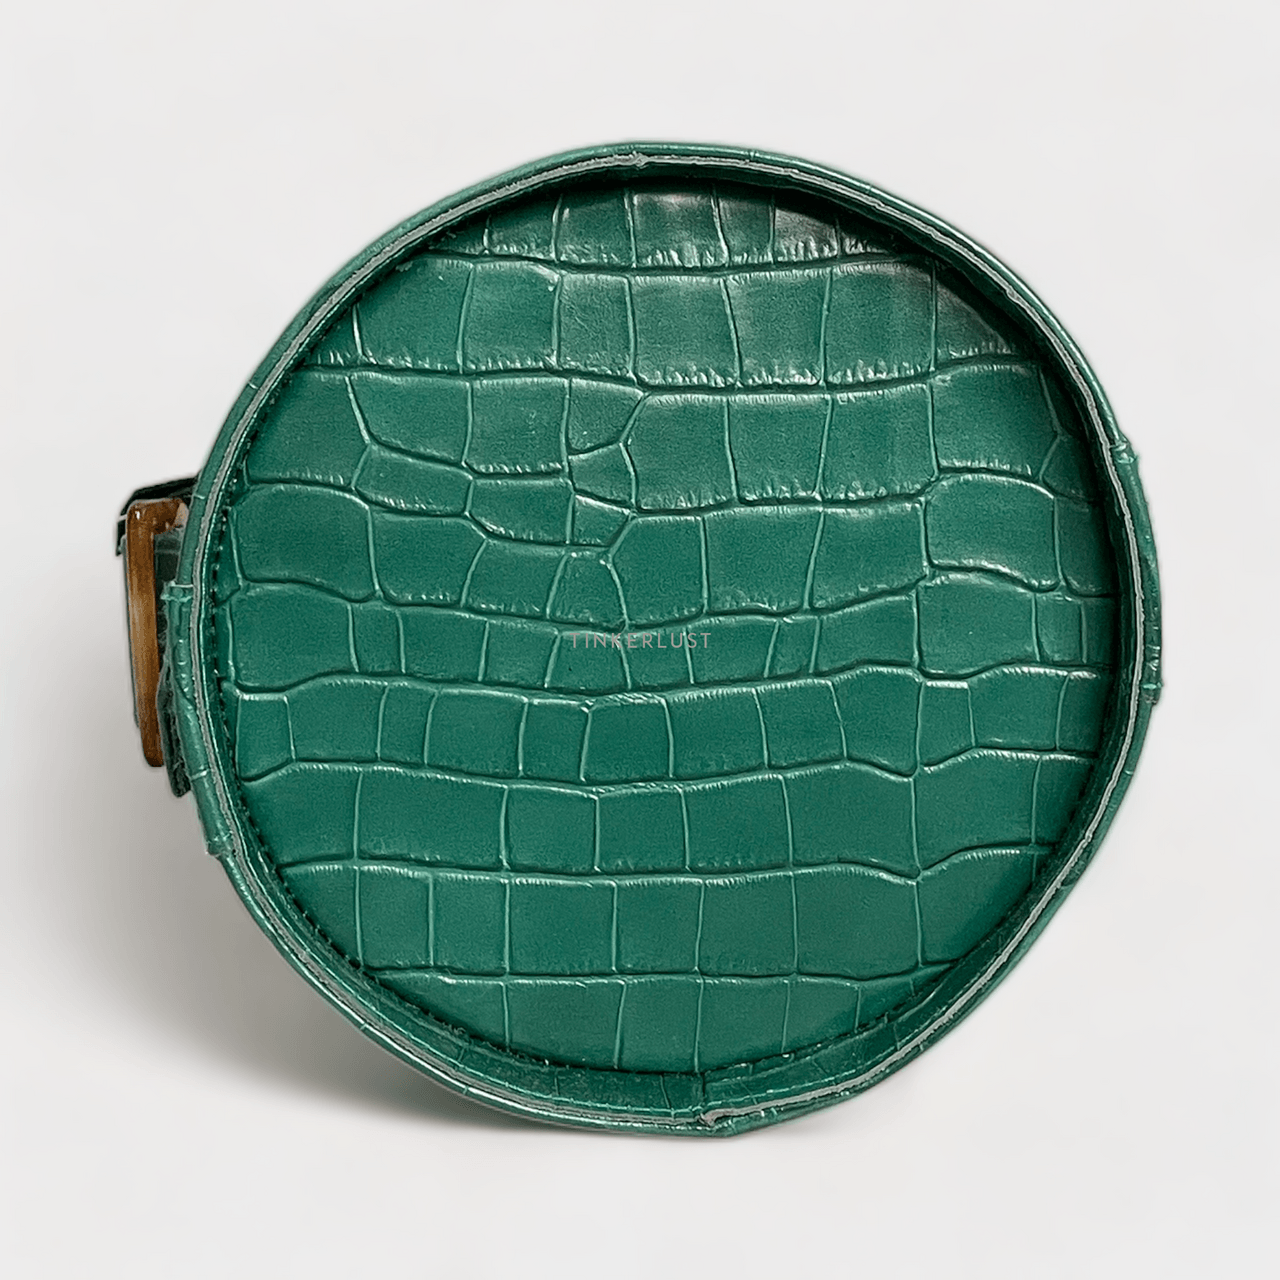 PRIEL Dark Green Croco Handbag